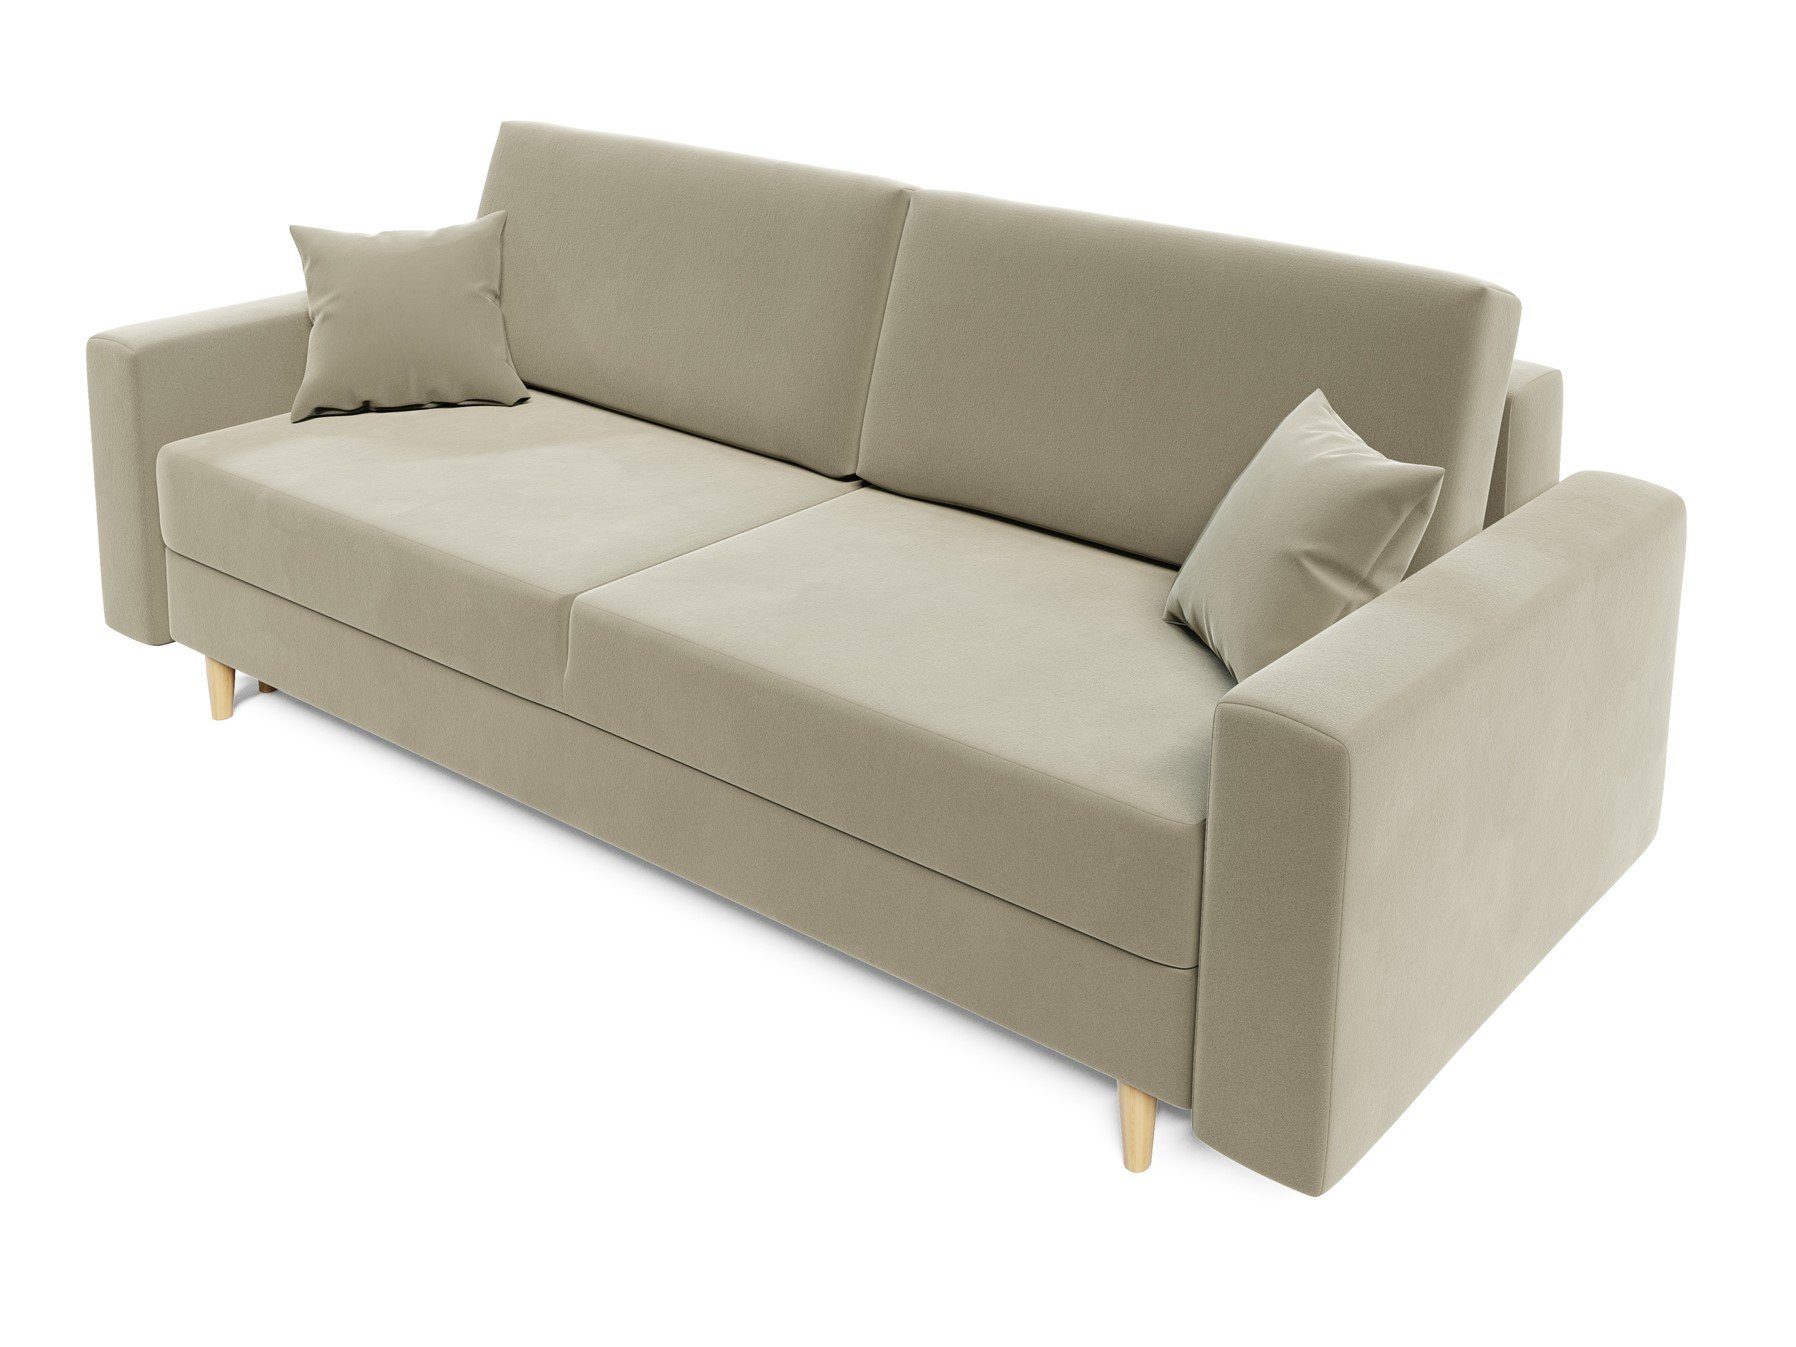 60er BELLA mit Style Sofa 3-Sitzer Möbel Schlafsofa Schlaffunktion, Rundumbezug, Creme Fun Designersofa